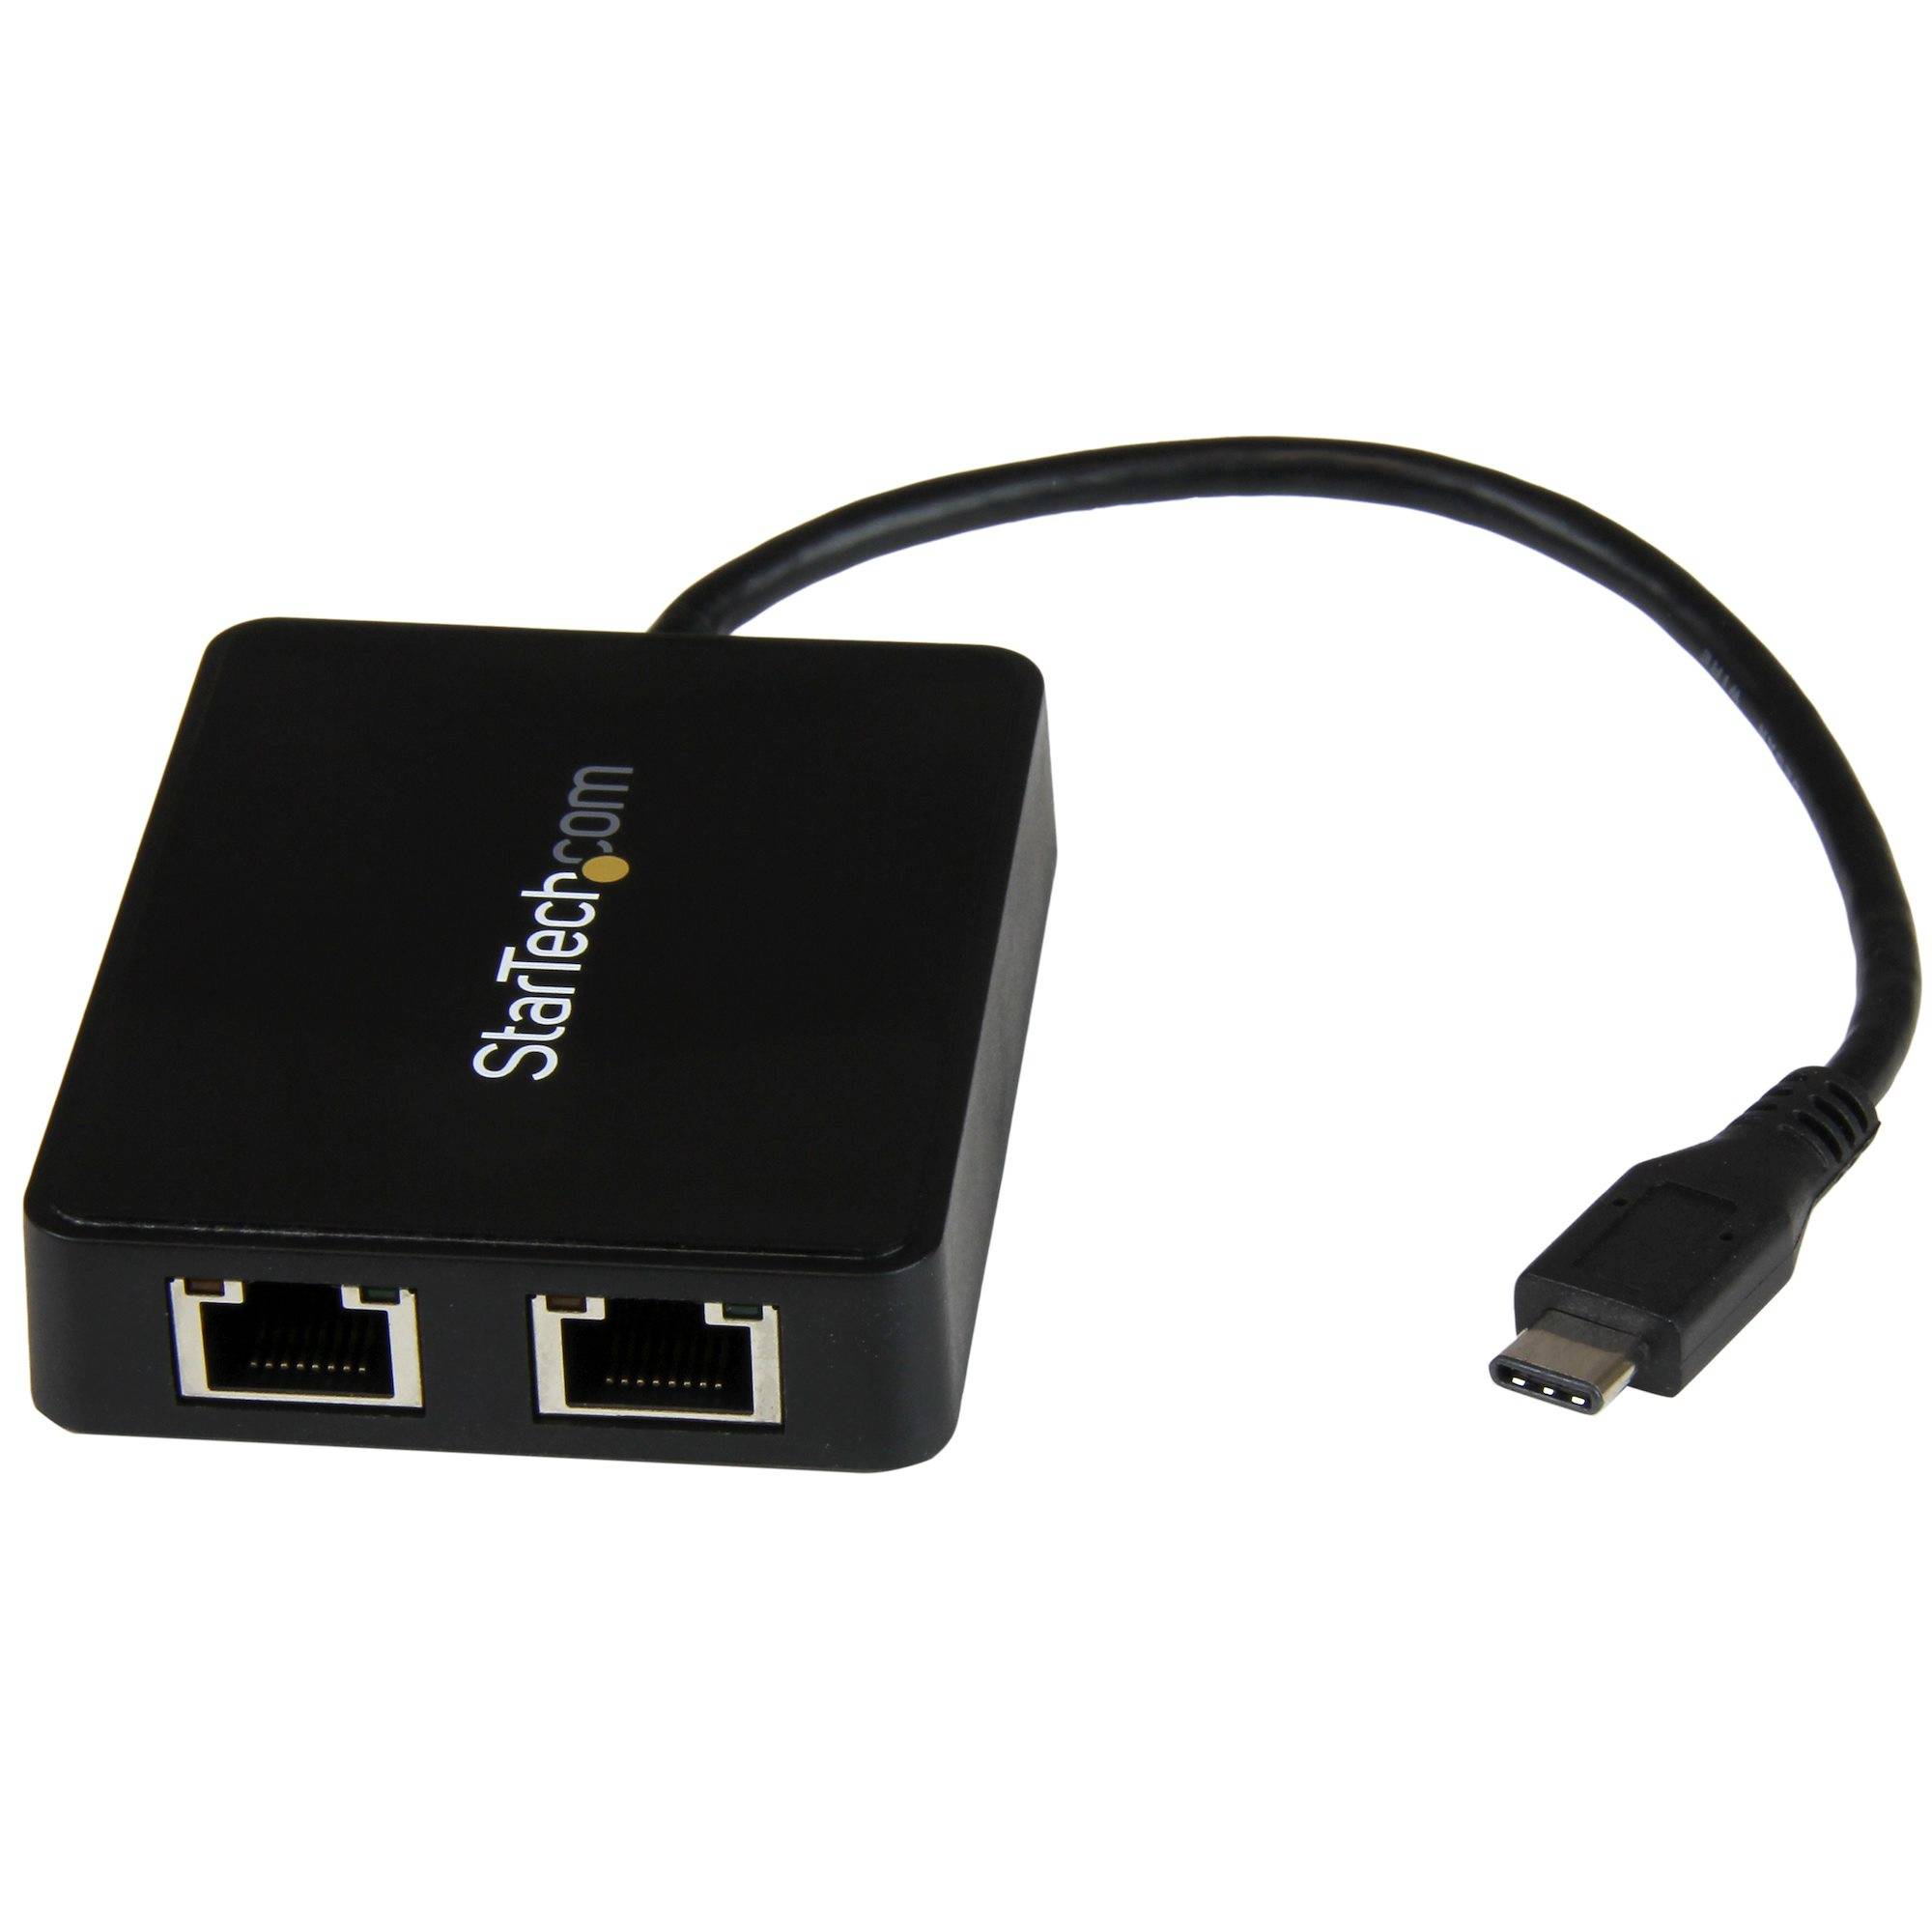 Rca Informatique - image du produit : ADAPTATEUR USB-C VERS 2 PORTS RJ45 GIGABIT ETHERNET